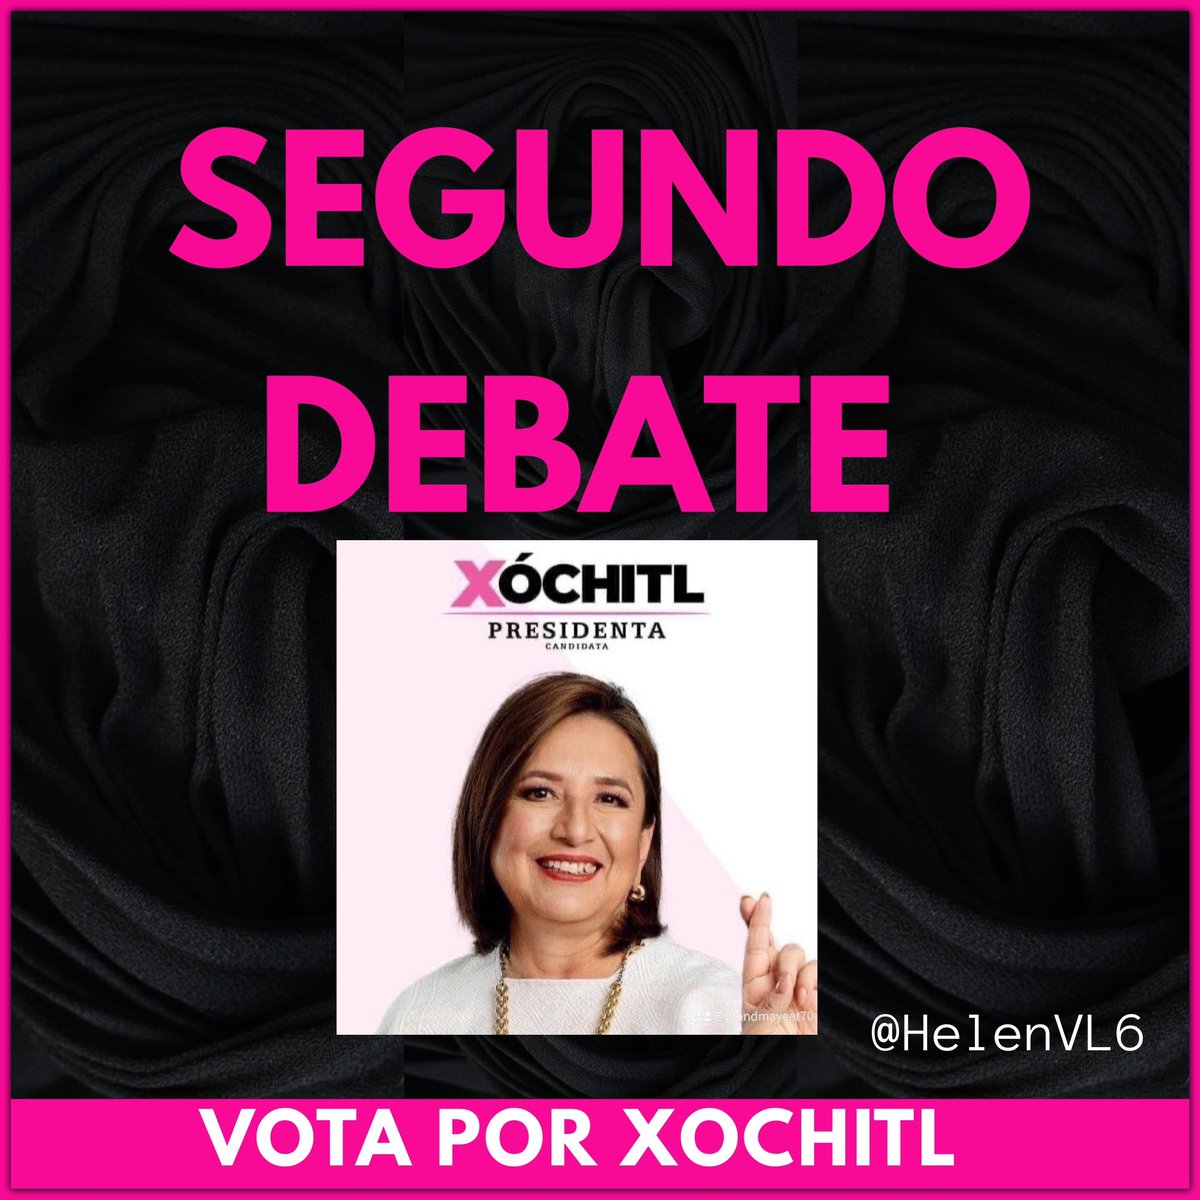 ¡Estamos listos para el Segundo Debate!
Xóchitl ya ganó el corazón de millones de mexicanos. ¡Lo mejor esta por venir ! ¡Ánimo! 
#XochitlGalvezPresidenta2024 
#XochitlVa2024 
#MiVotoParaXochitl10 
@XochitlGalvez @SCJN @AccionNacional @SocCivilMx
@Mx_Diputados @senadomexicano…